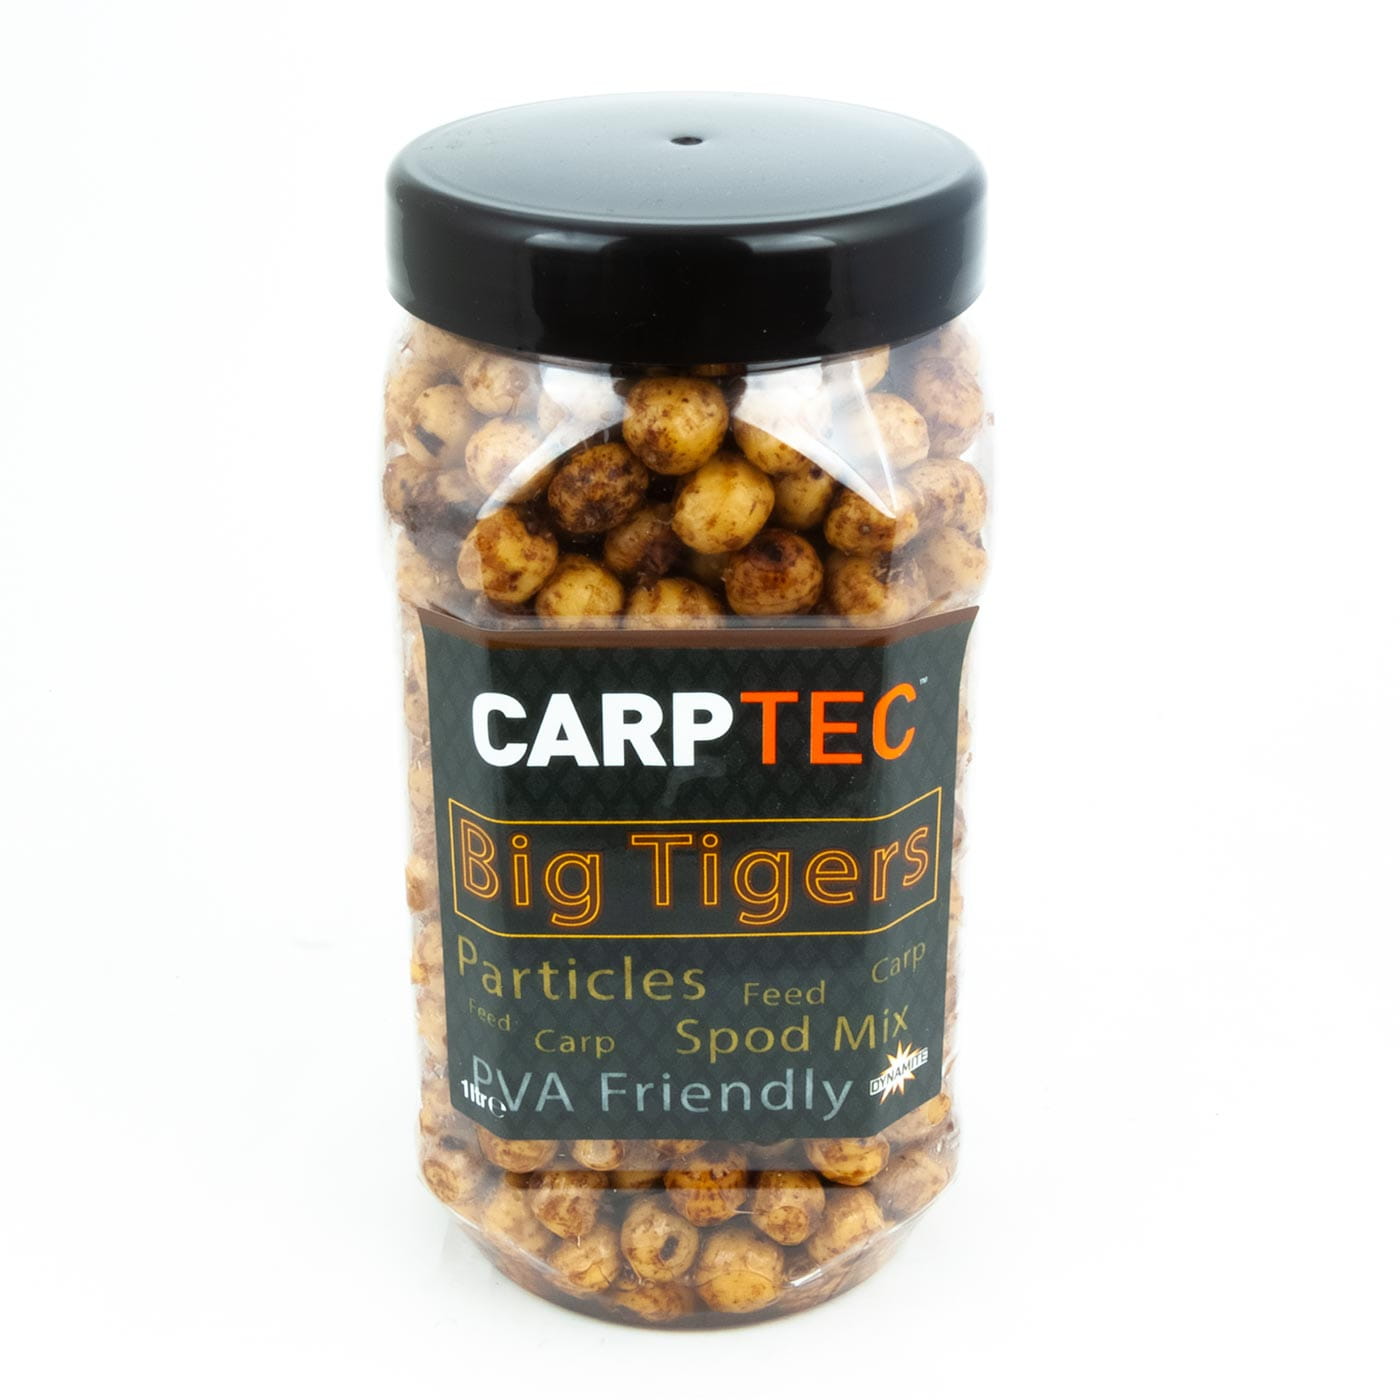 Carptec Particles - Big Tigernut